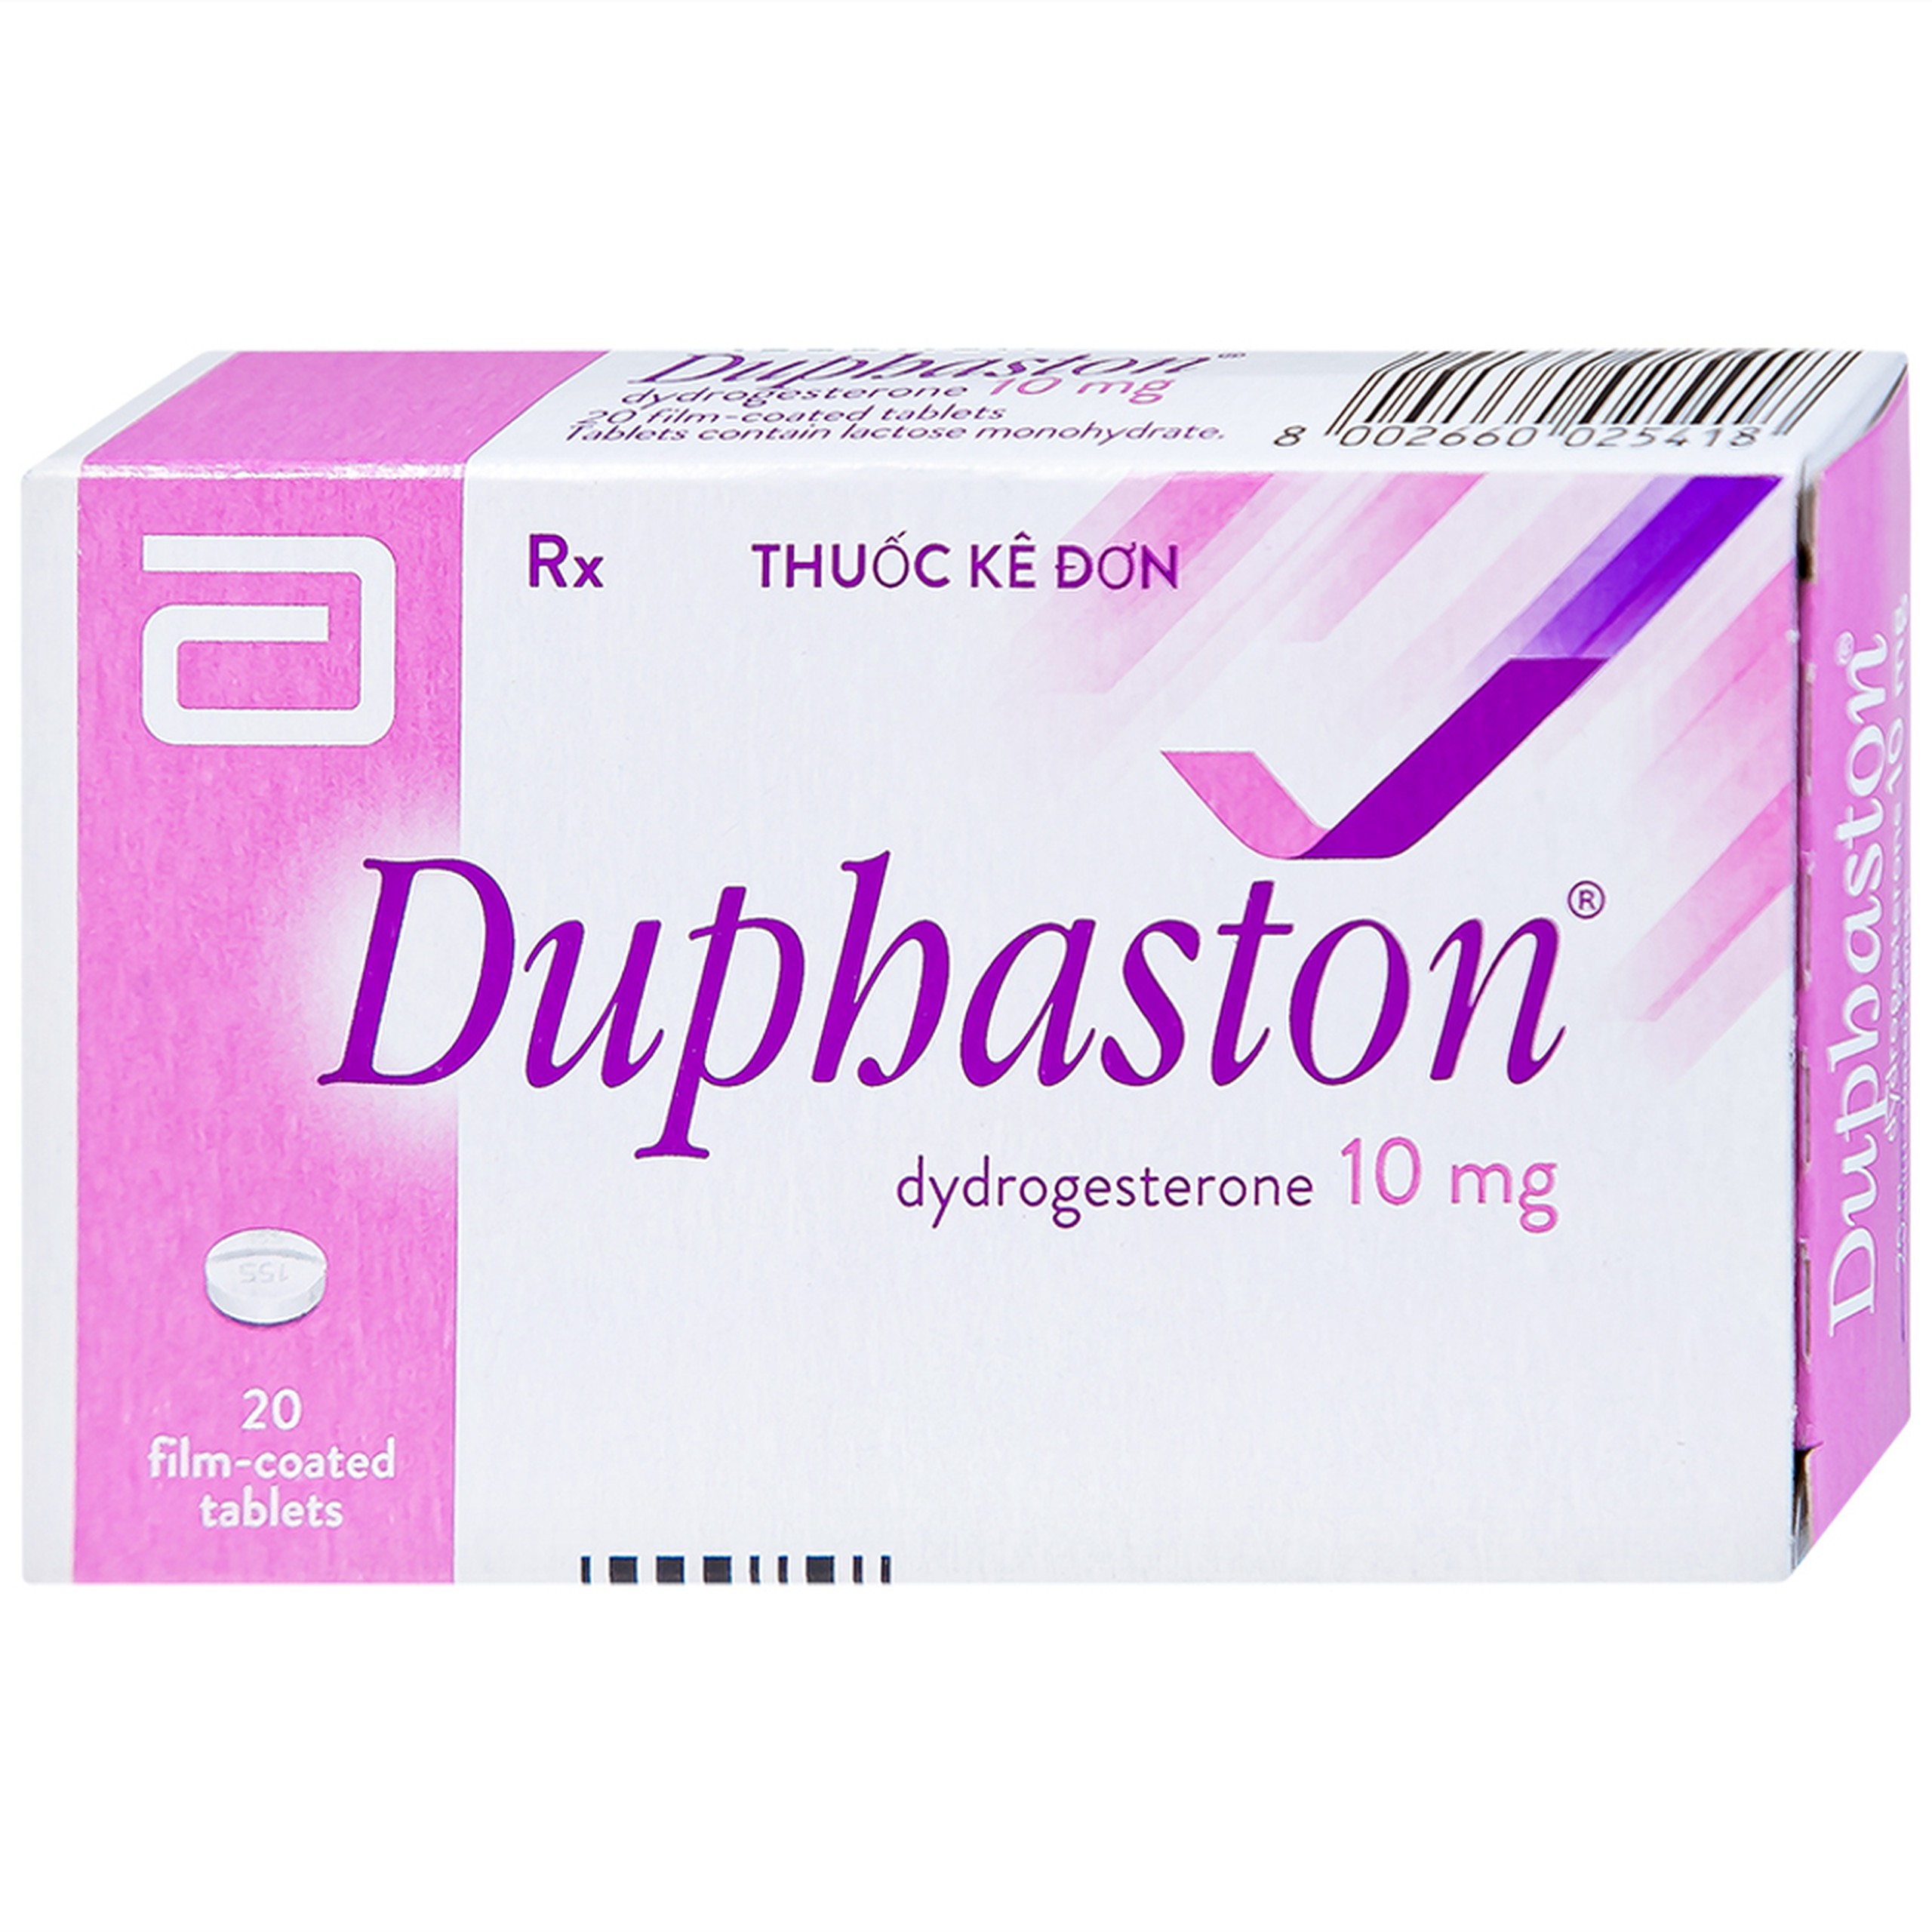 Thuốc Duphaston Abbott điều hòa kinh nguyệt, lạc nội mạc tử cung (1 vỉ x 20 viên)